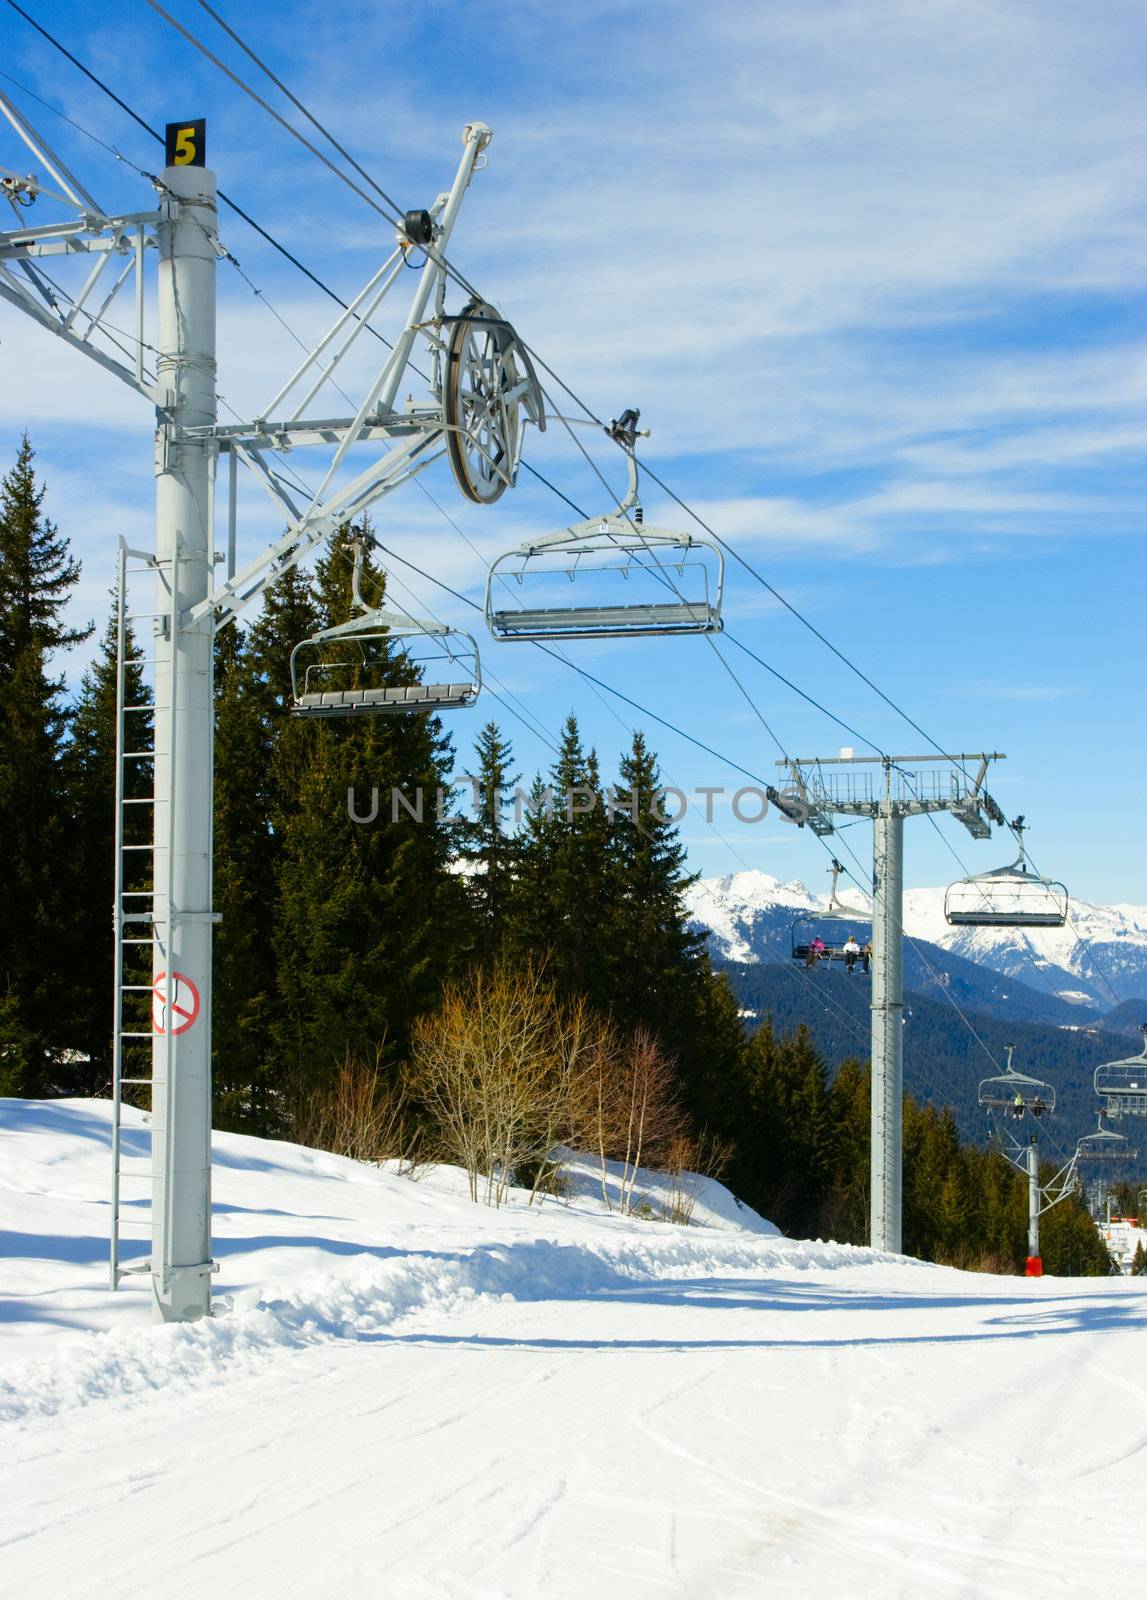 Chairlift intermediate towers at Alpine ski resort